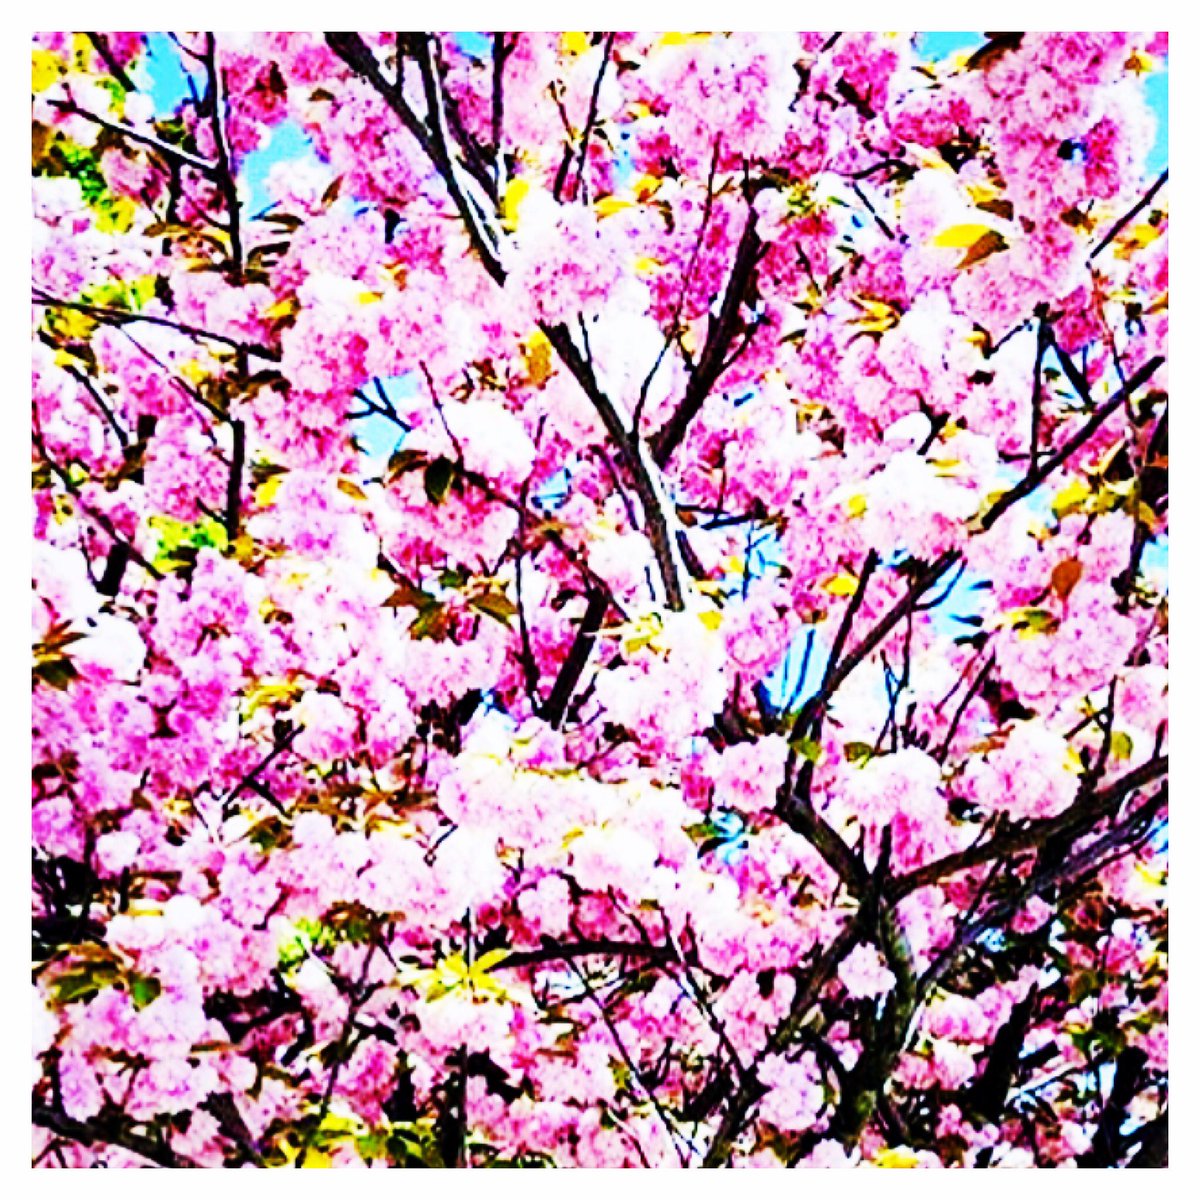 #Spring #CerisierJaponais 🌸🌸🌸#Paris #Paris7 🇫🇷 ©ContreJour